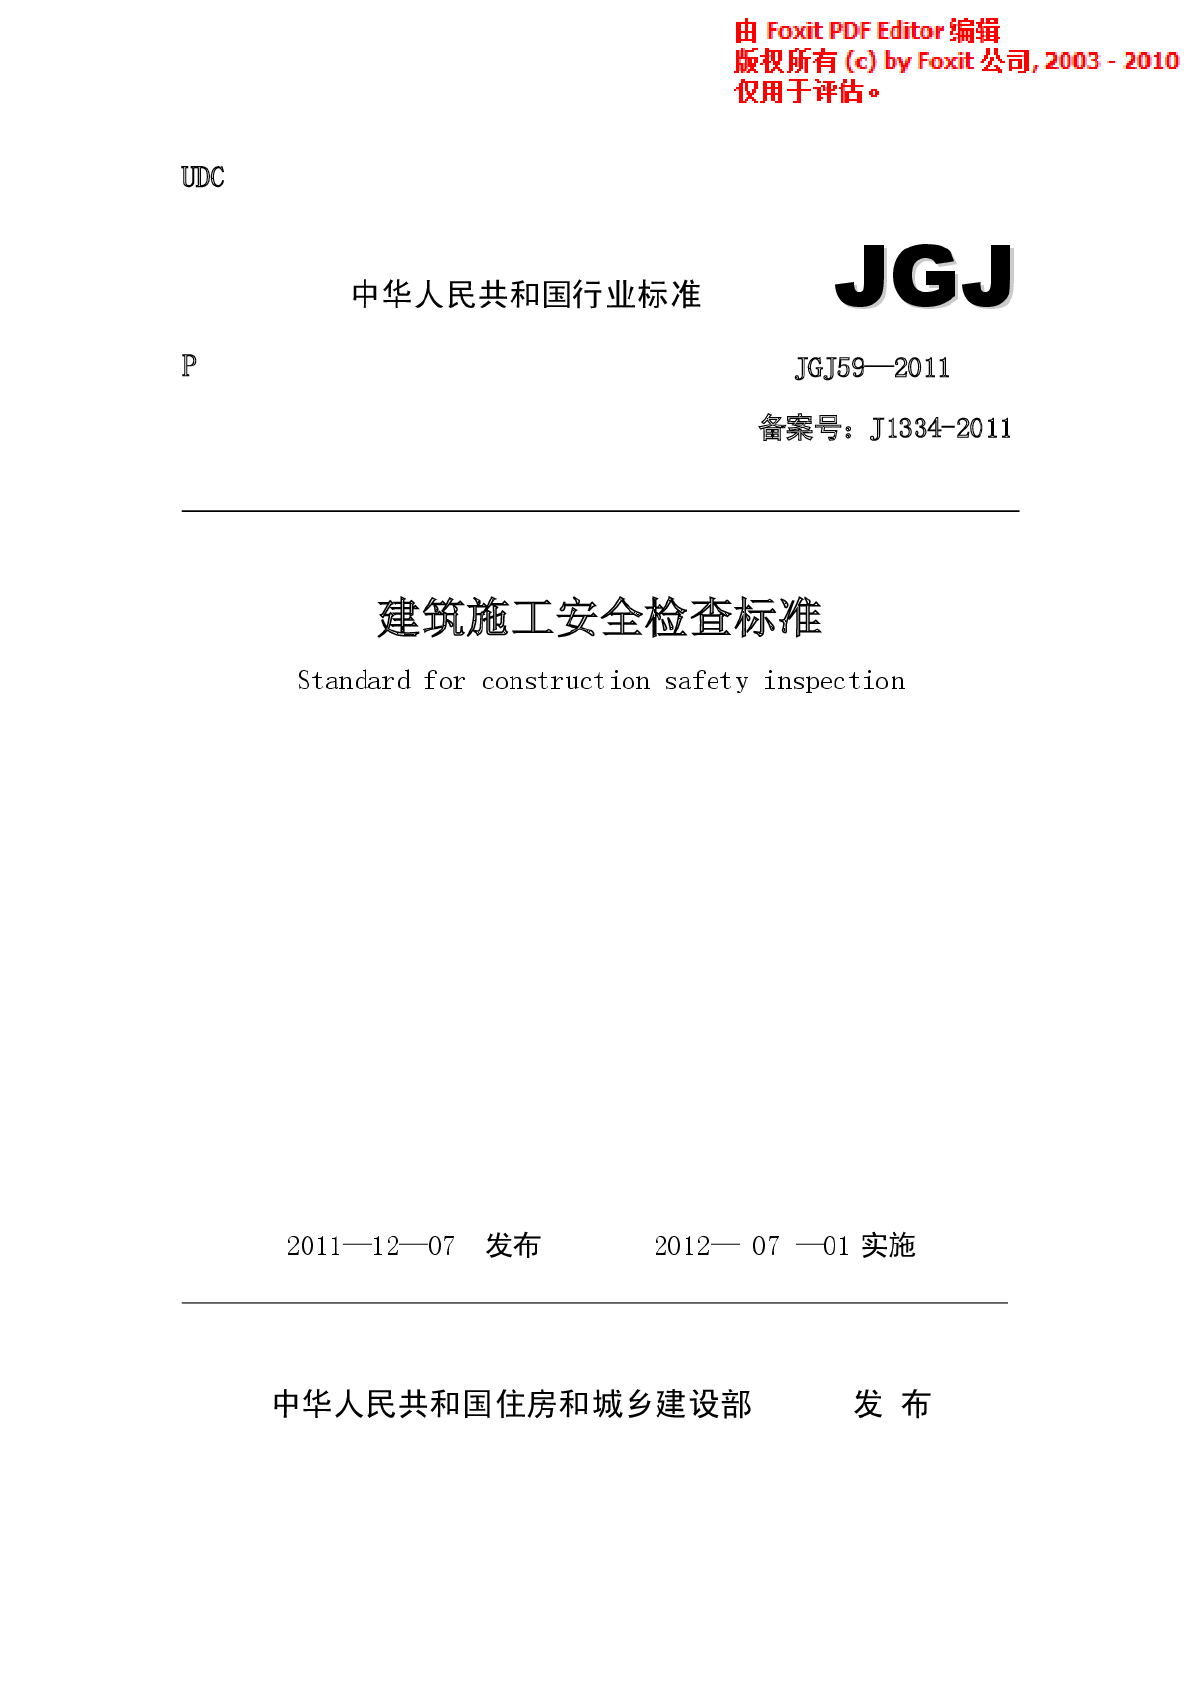 JGJ59-2011 建筑施工安全检查标准-图一